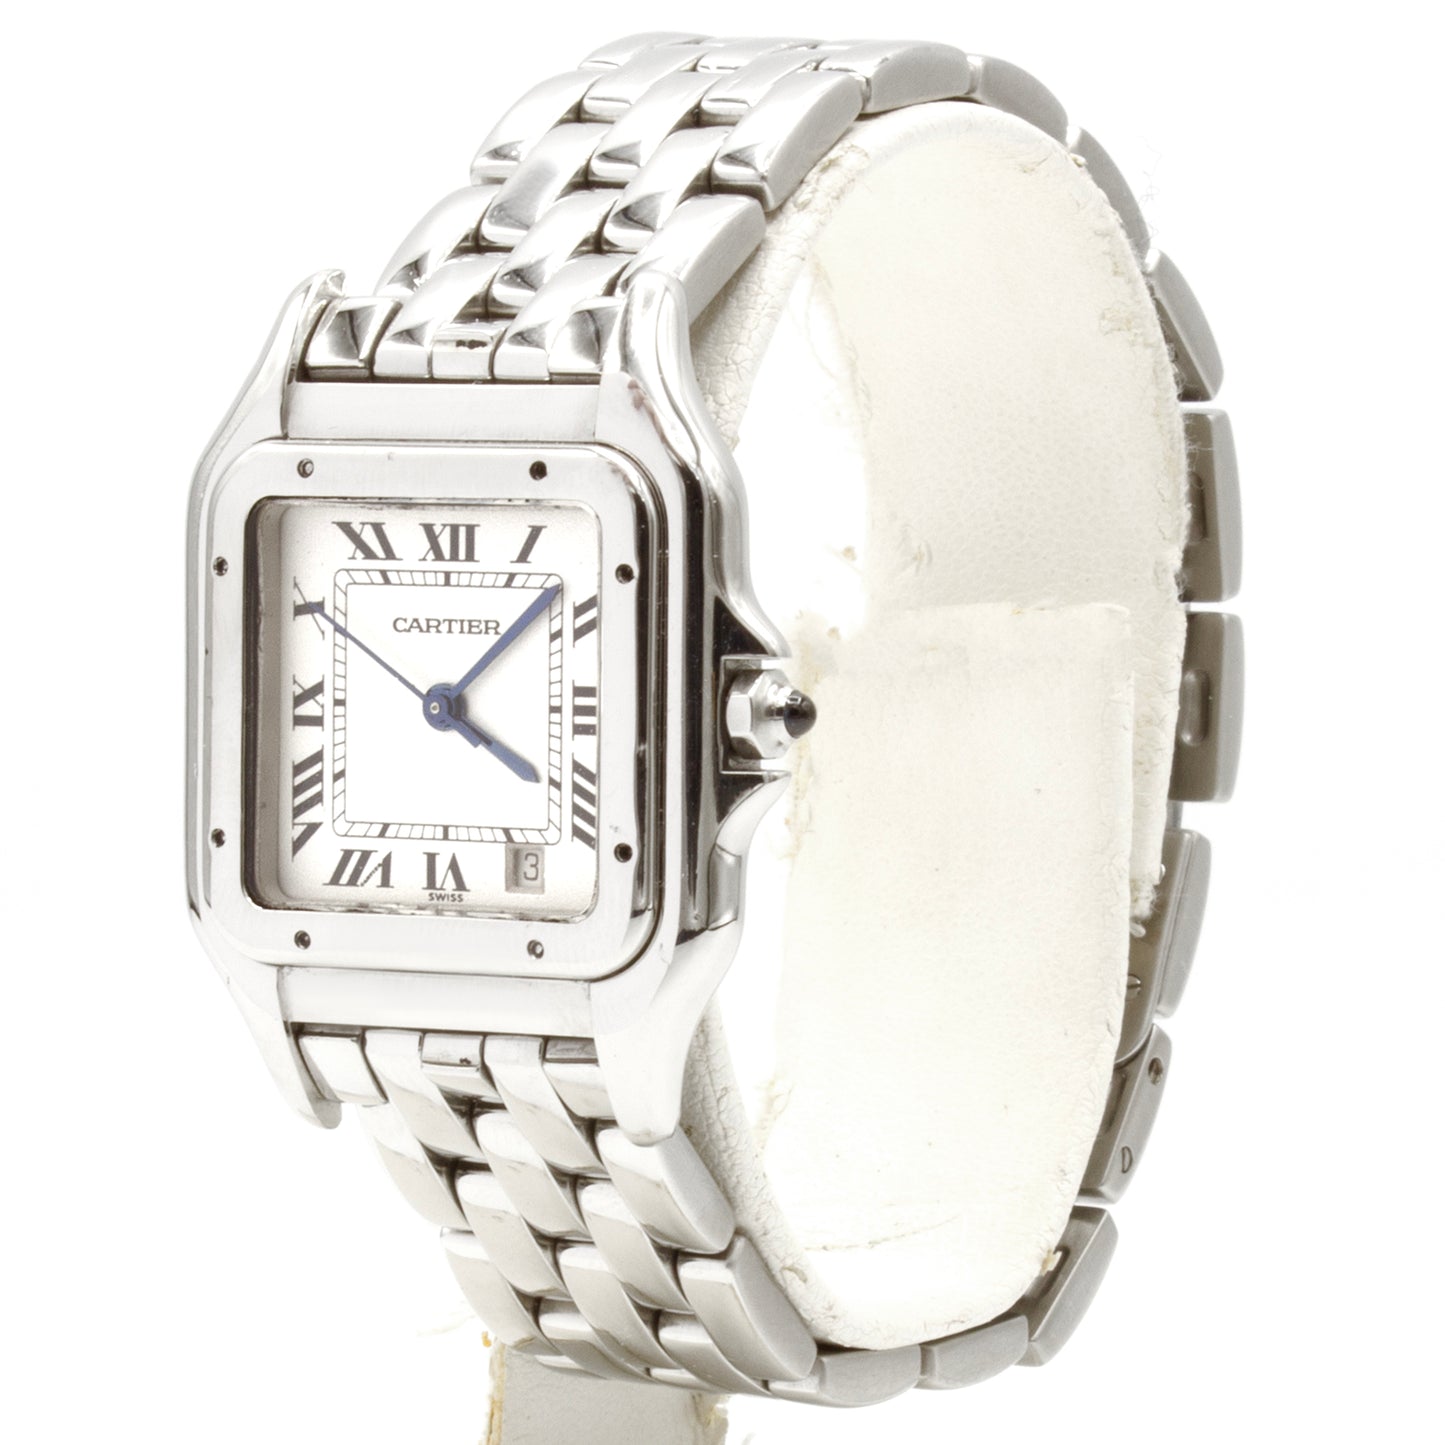 Cartier Panthère 1310 watch